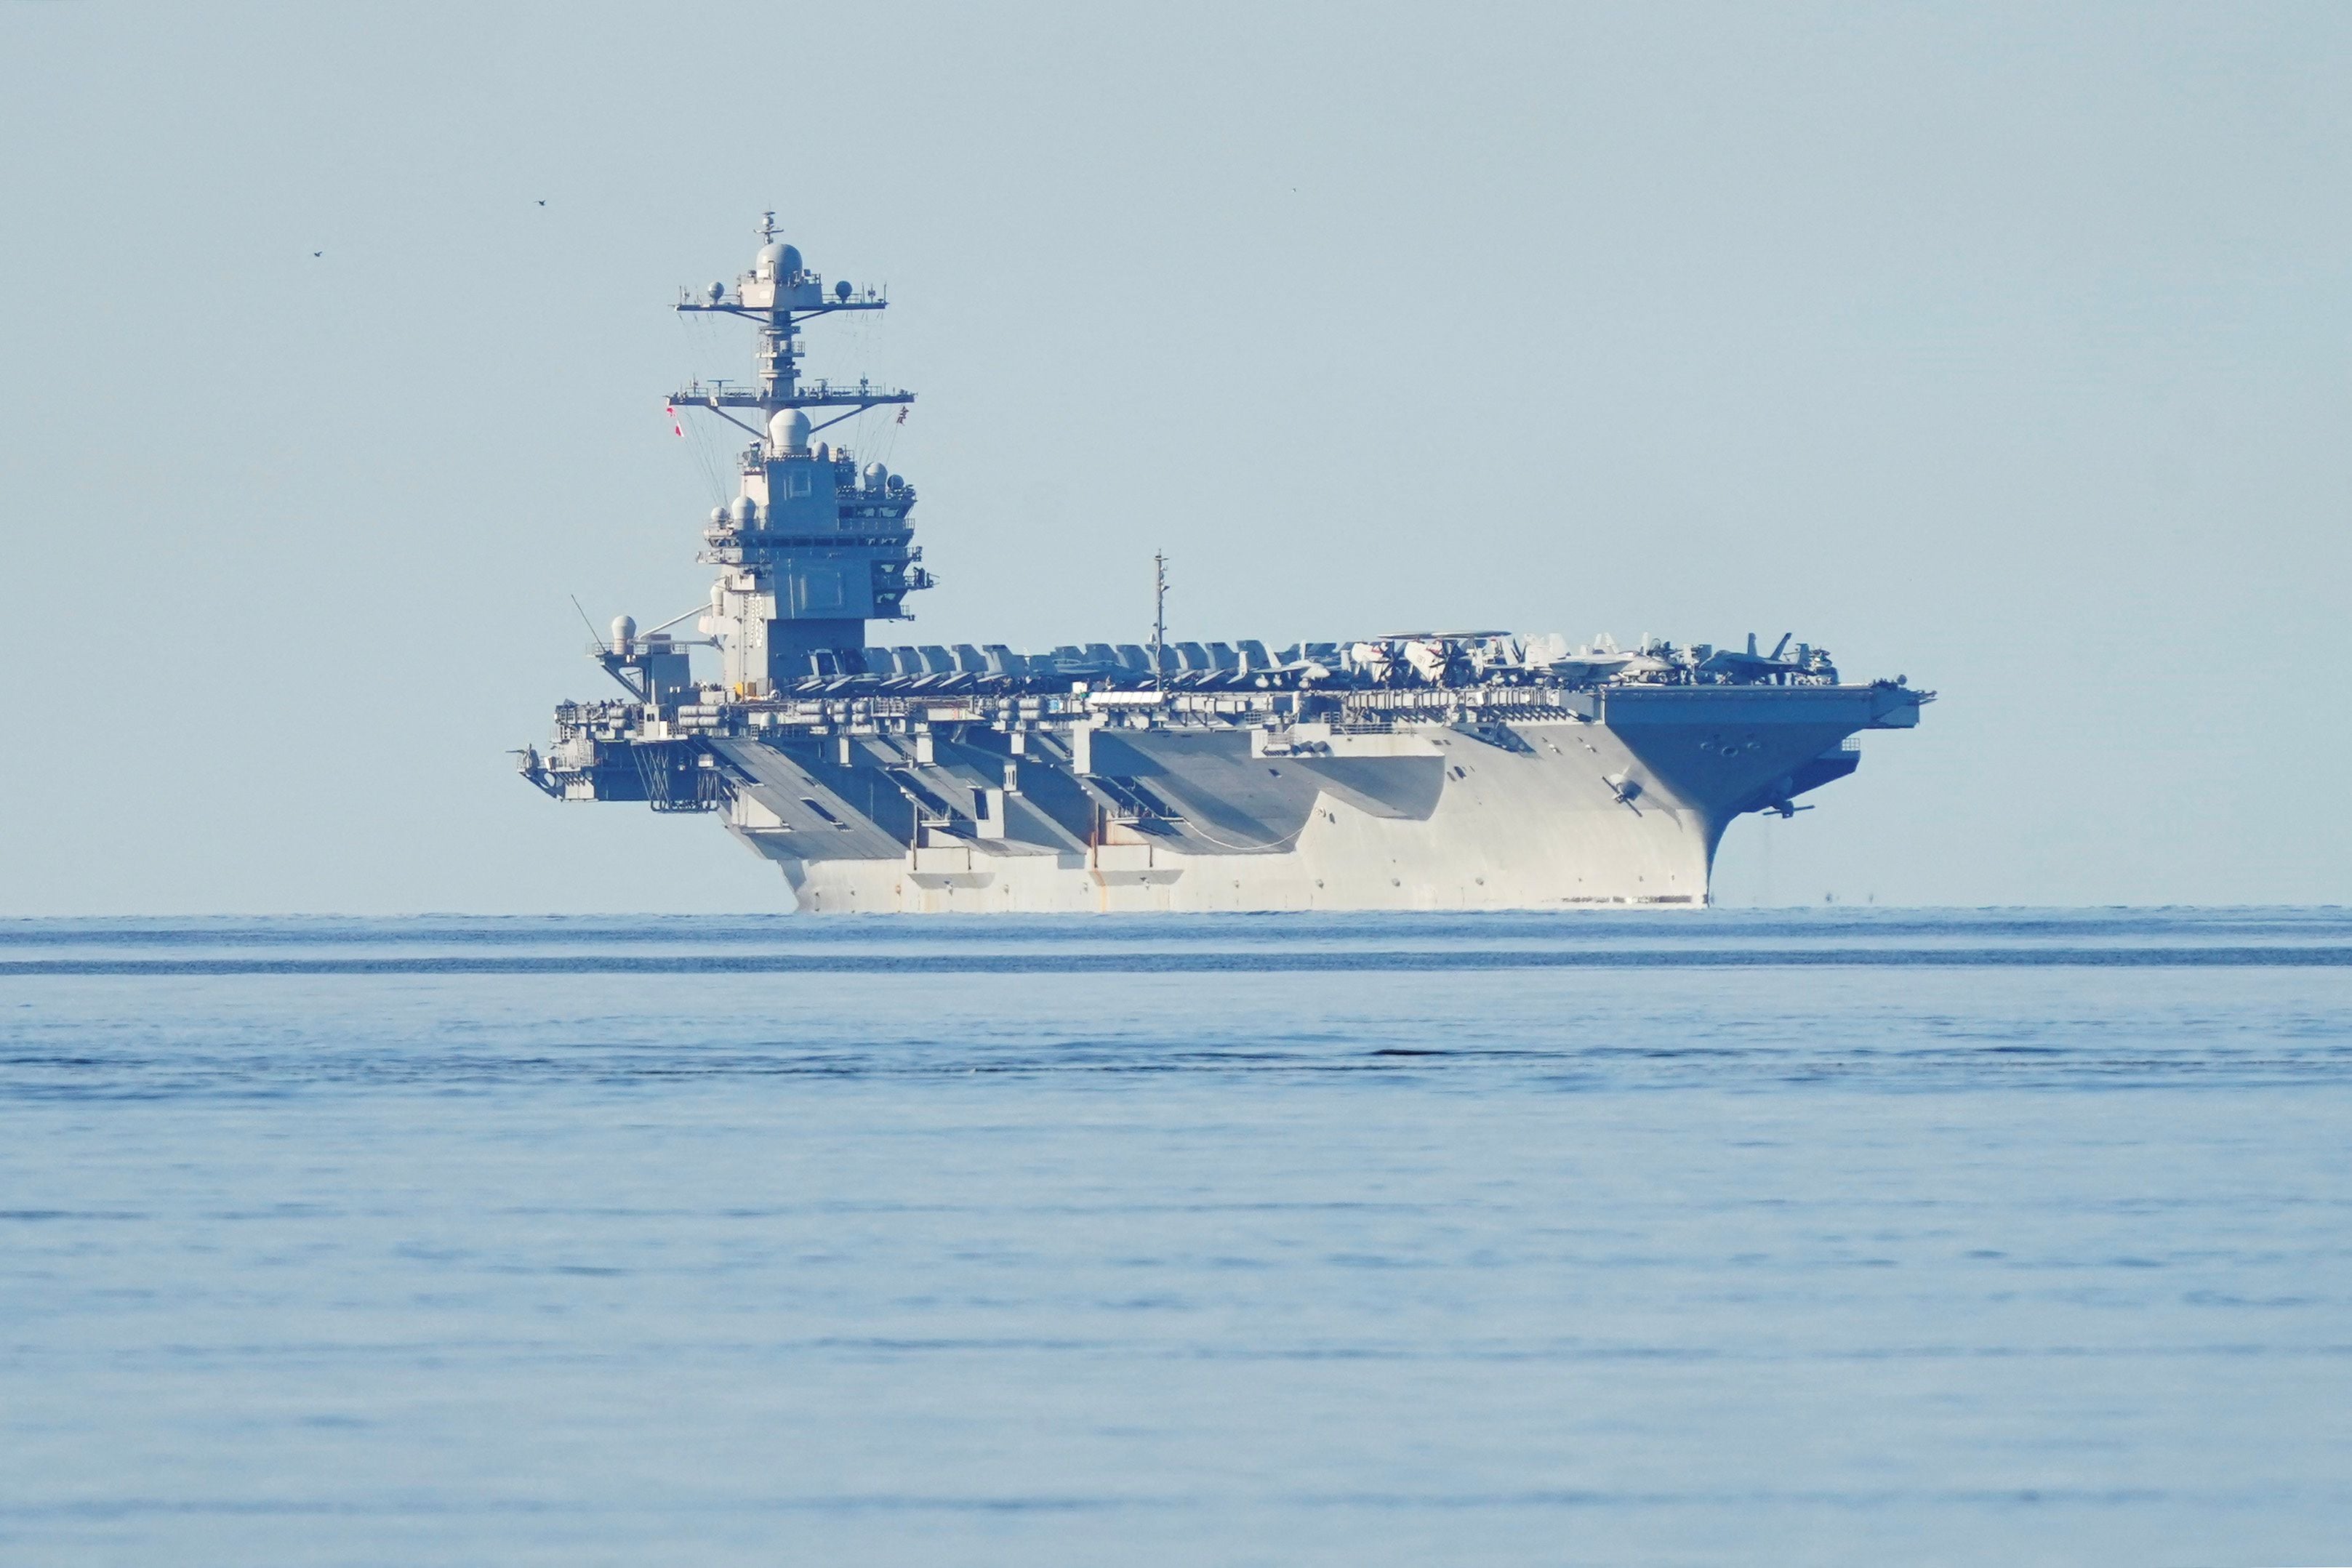 EEUU desplegará el portaaviones USS Gerald R. Ford para reforzar su presencia en Medio Oriente (Terje Pedersen/NTB/via REUTERS)